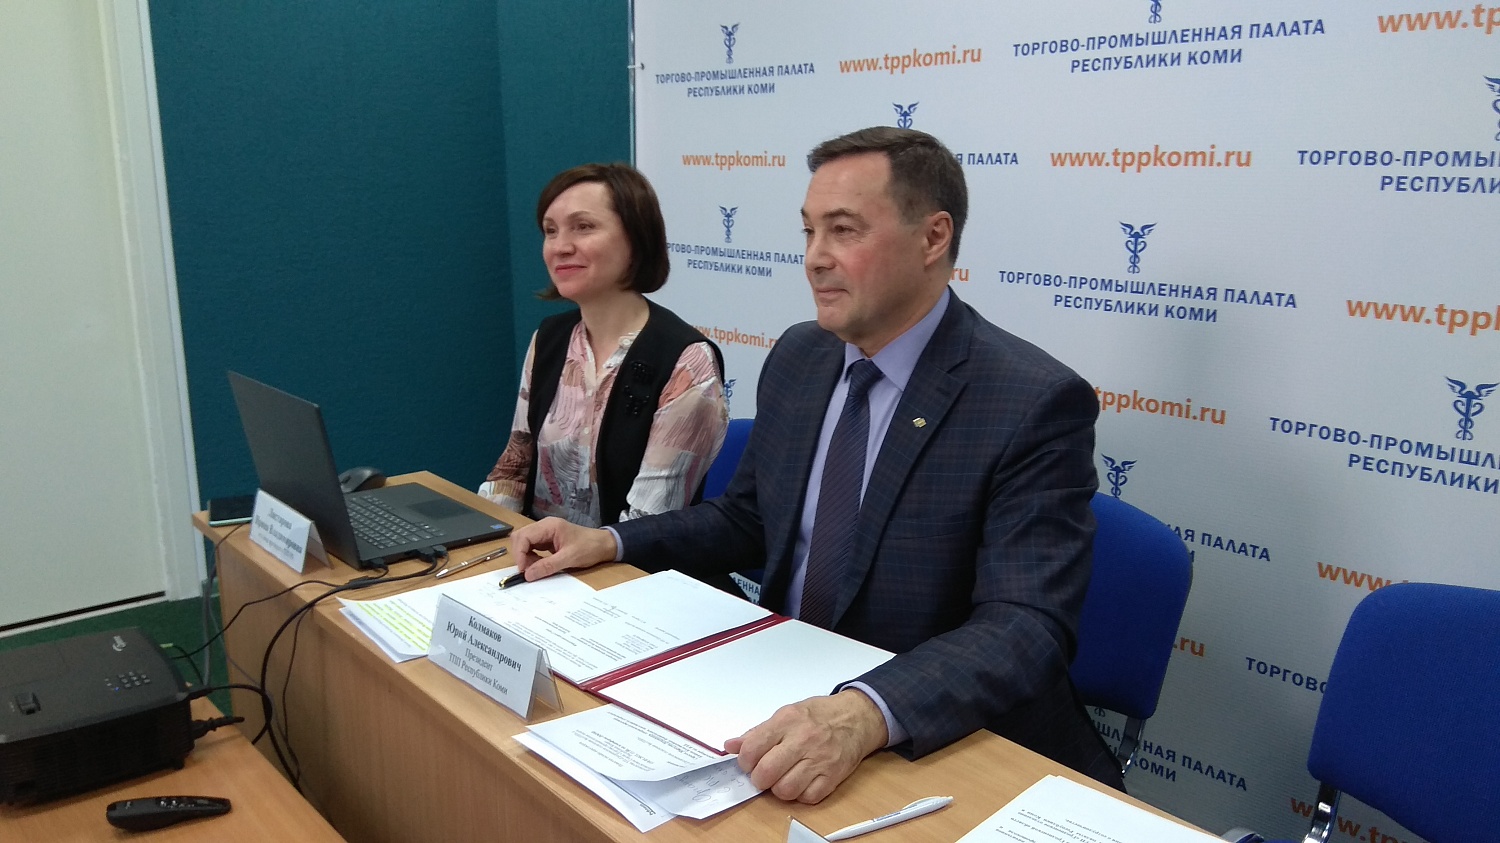 Гродненское отделение Белорусской ТПП и ТПП Коми в онлайн-режиме подписали соглашение о сотрудничестве